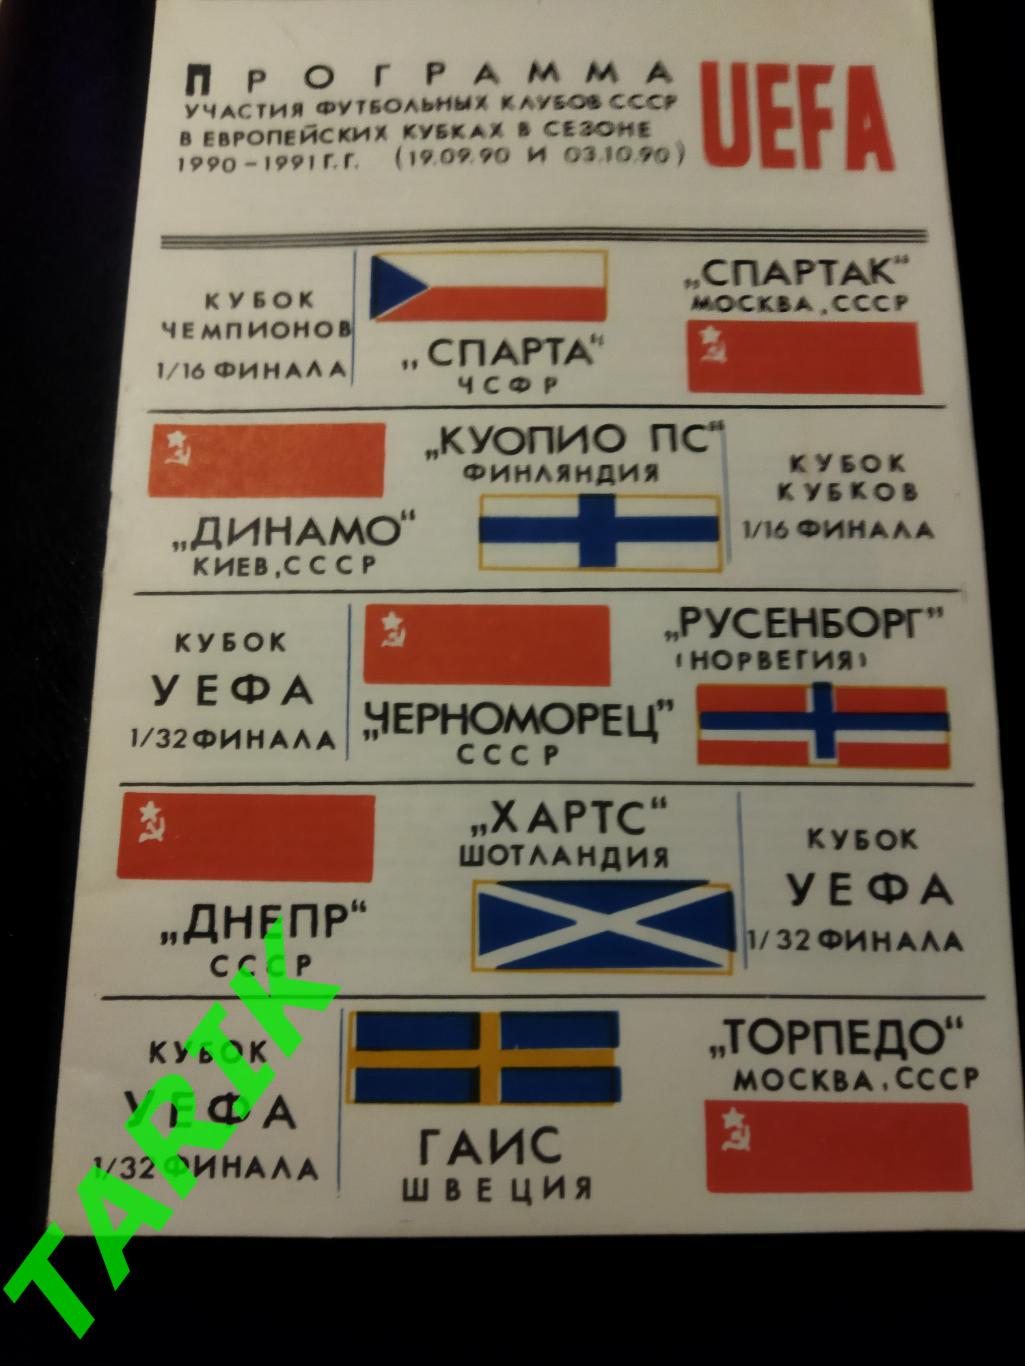 Программа участия футбольных клубов СССР в европейских кубках 1990-1991 г.г.